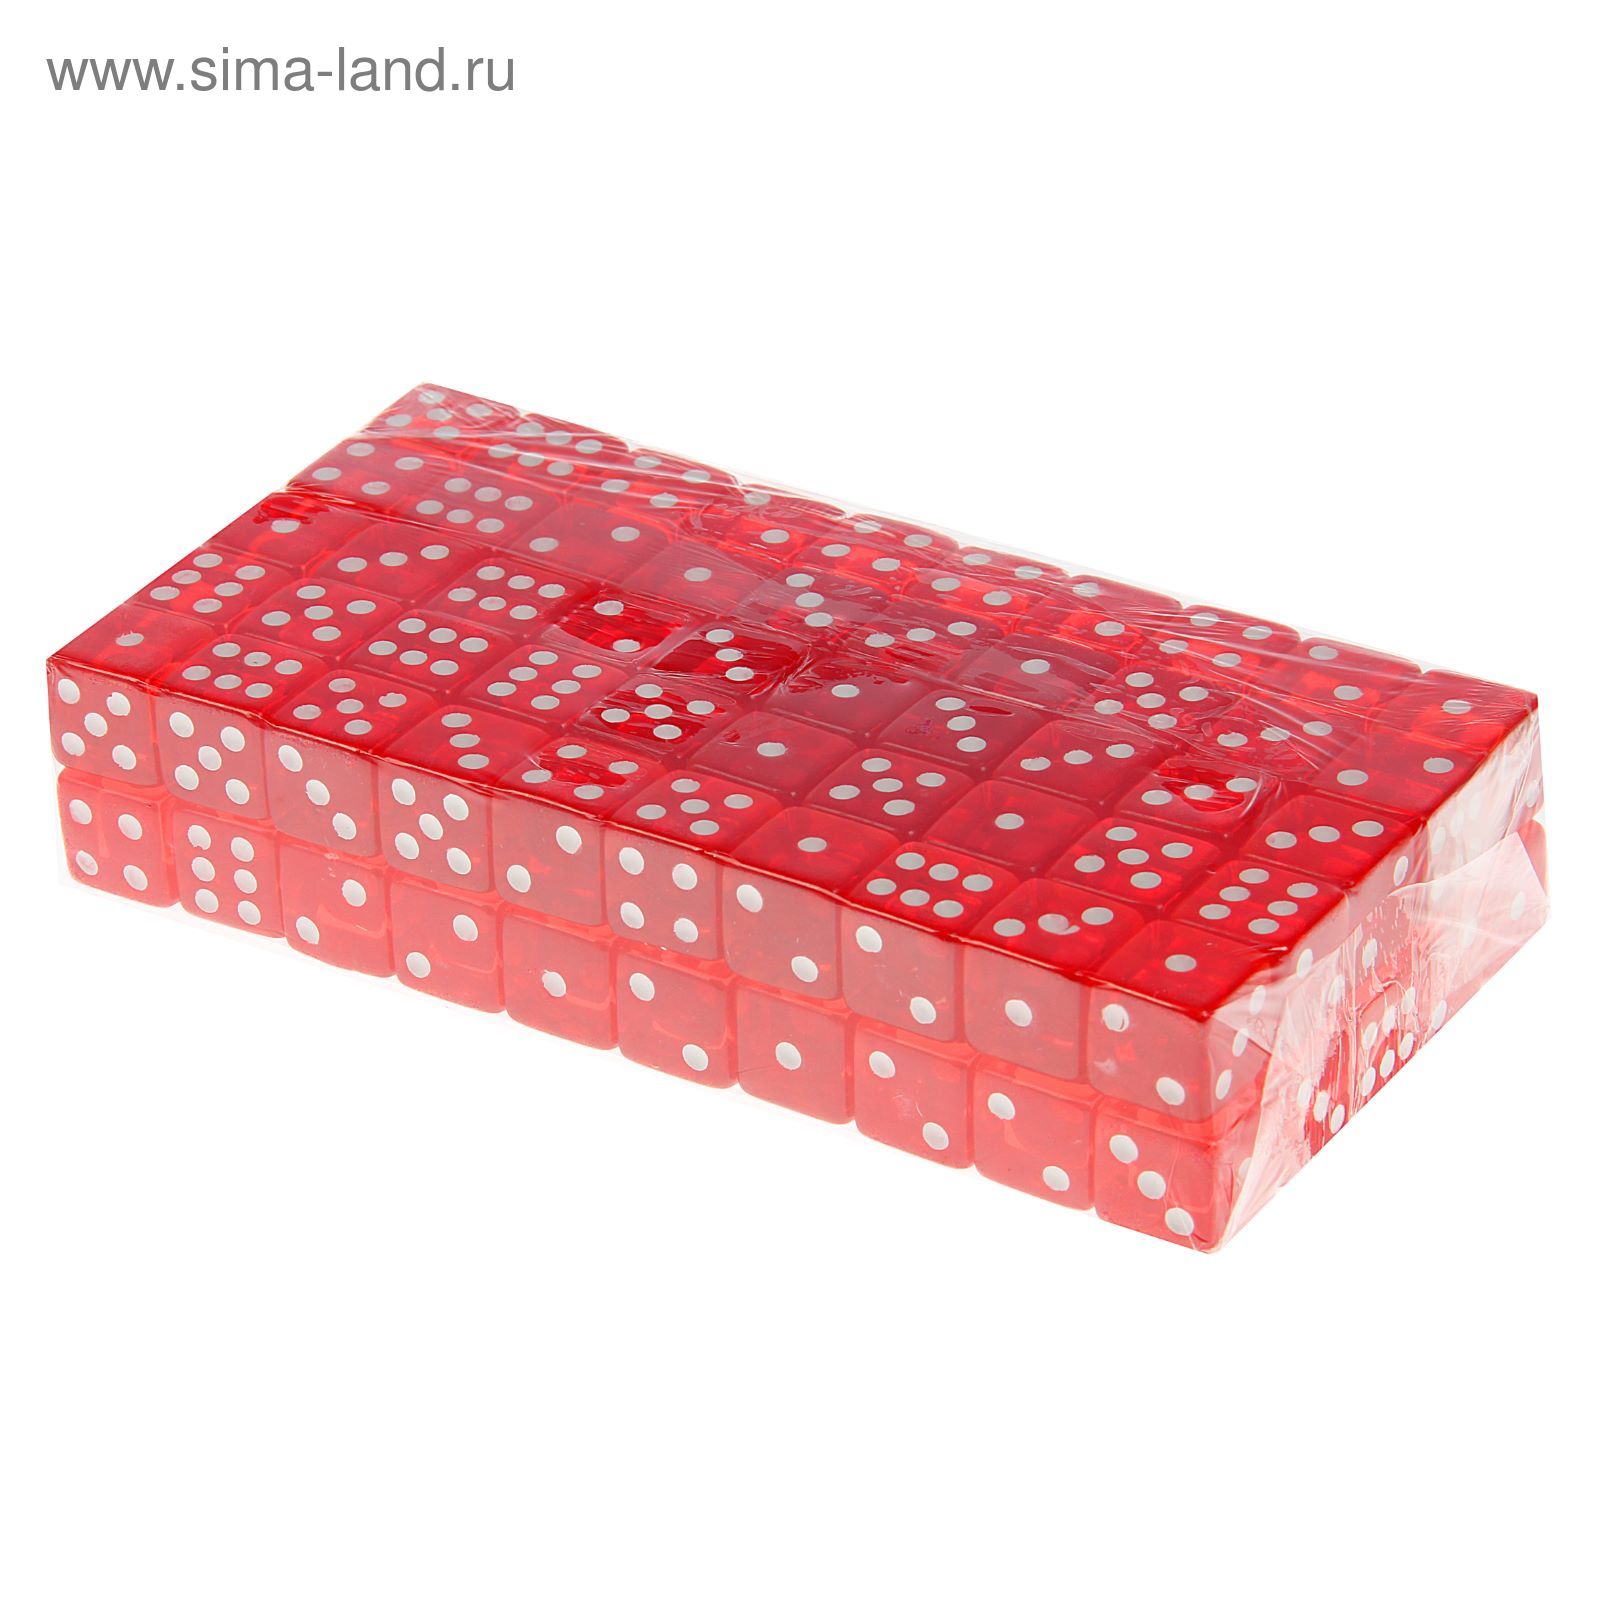 Кости игральные 1,6 × 1,6 см, красные, фасовка 100 шт.